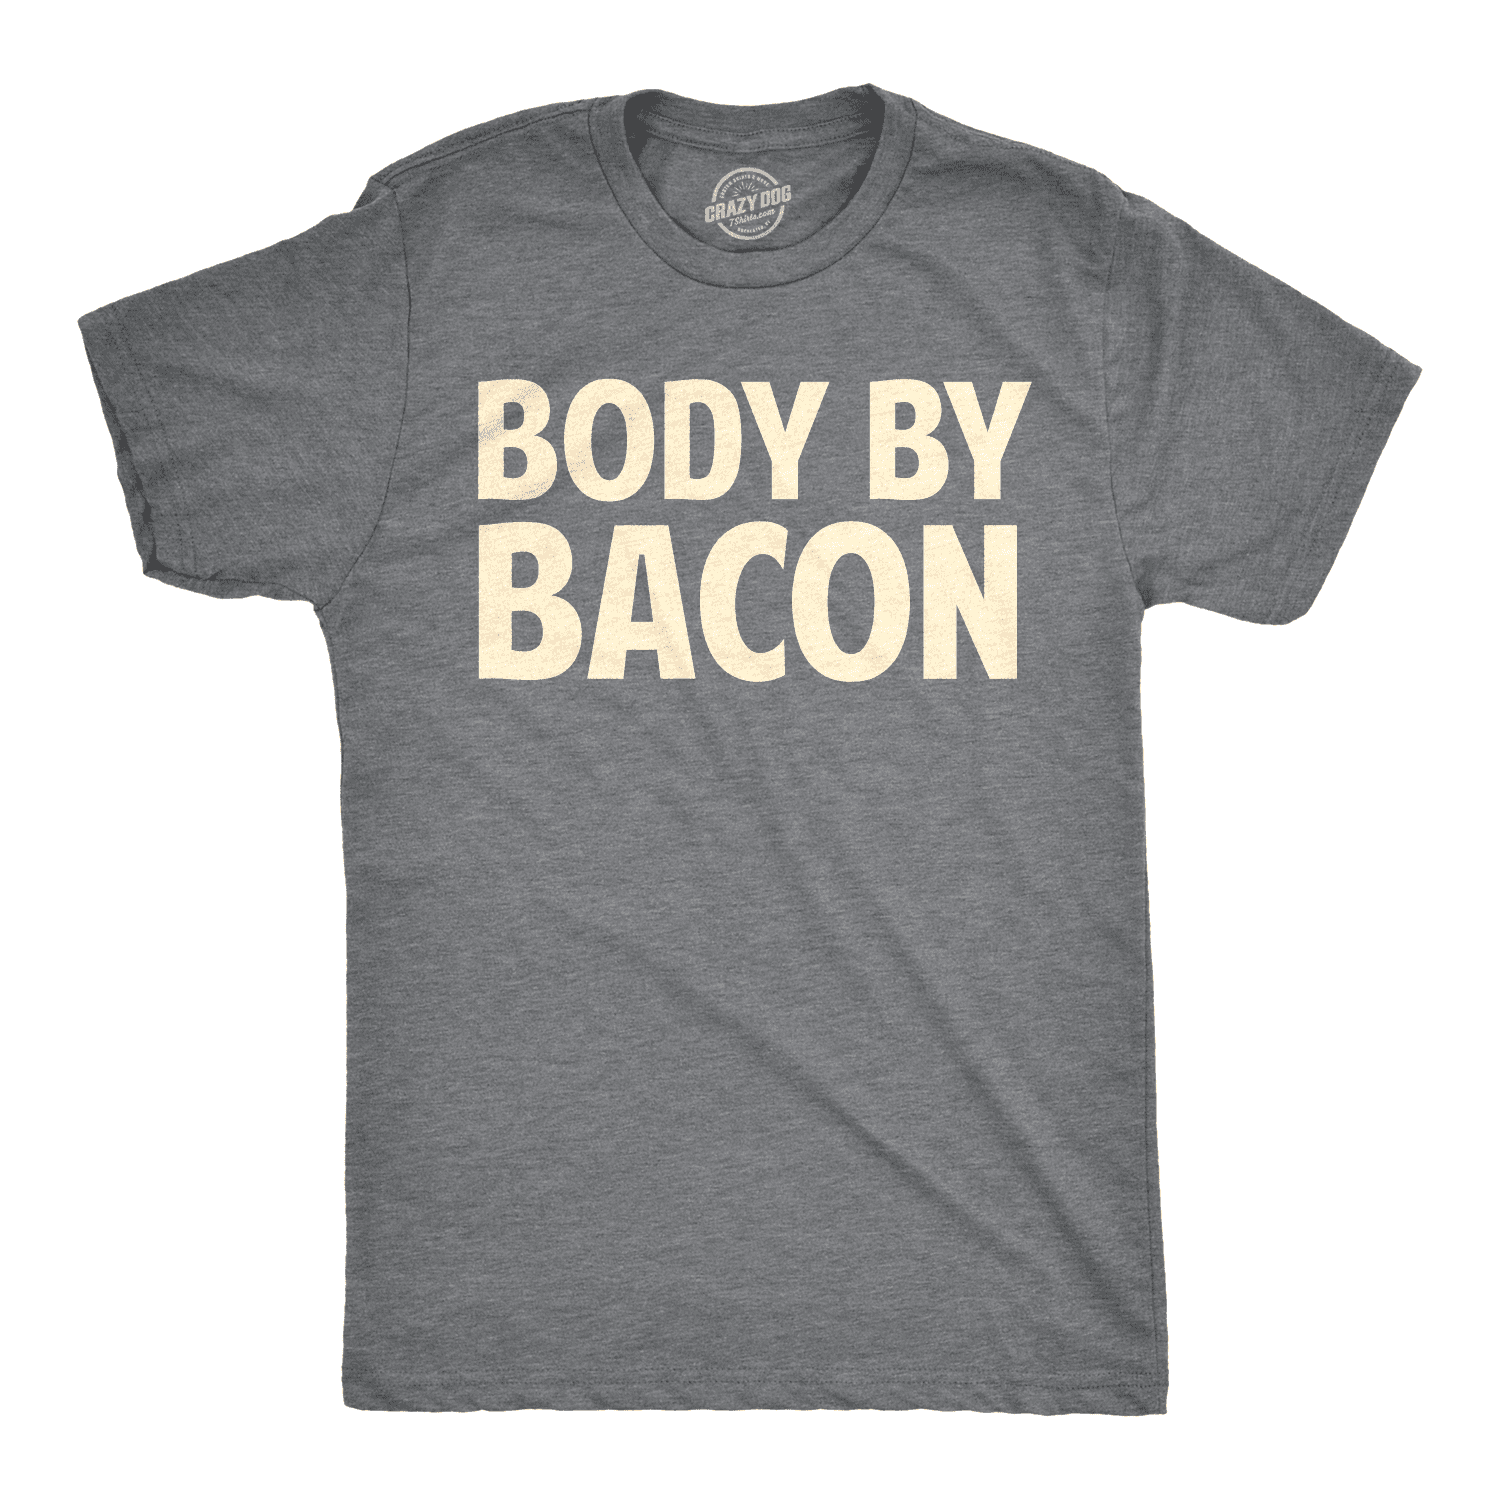 Bacon Éléments du tableau périodique T-Shirt